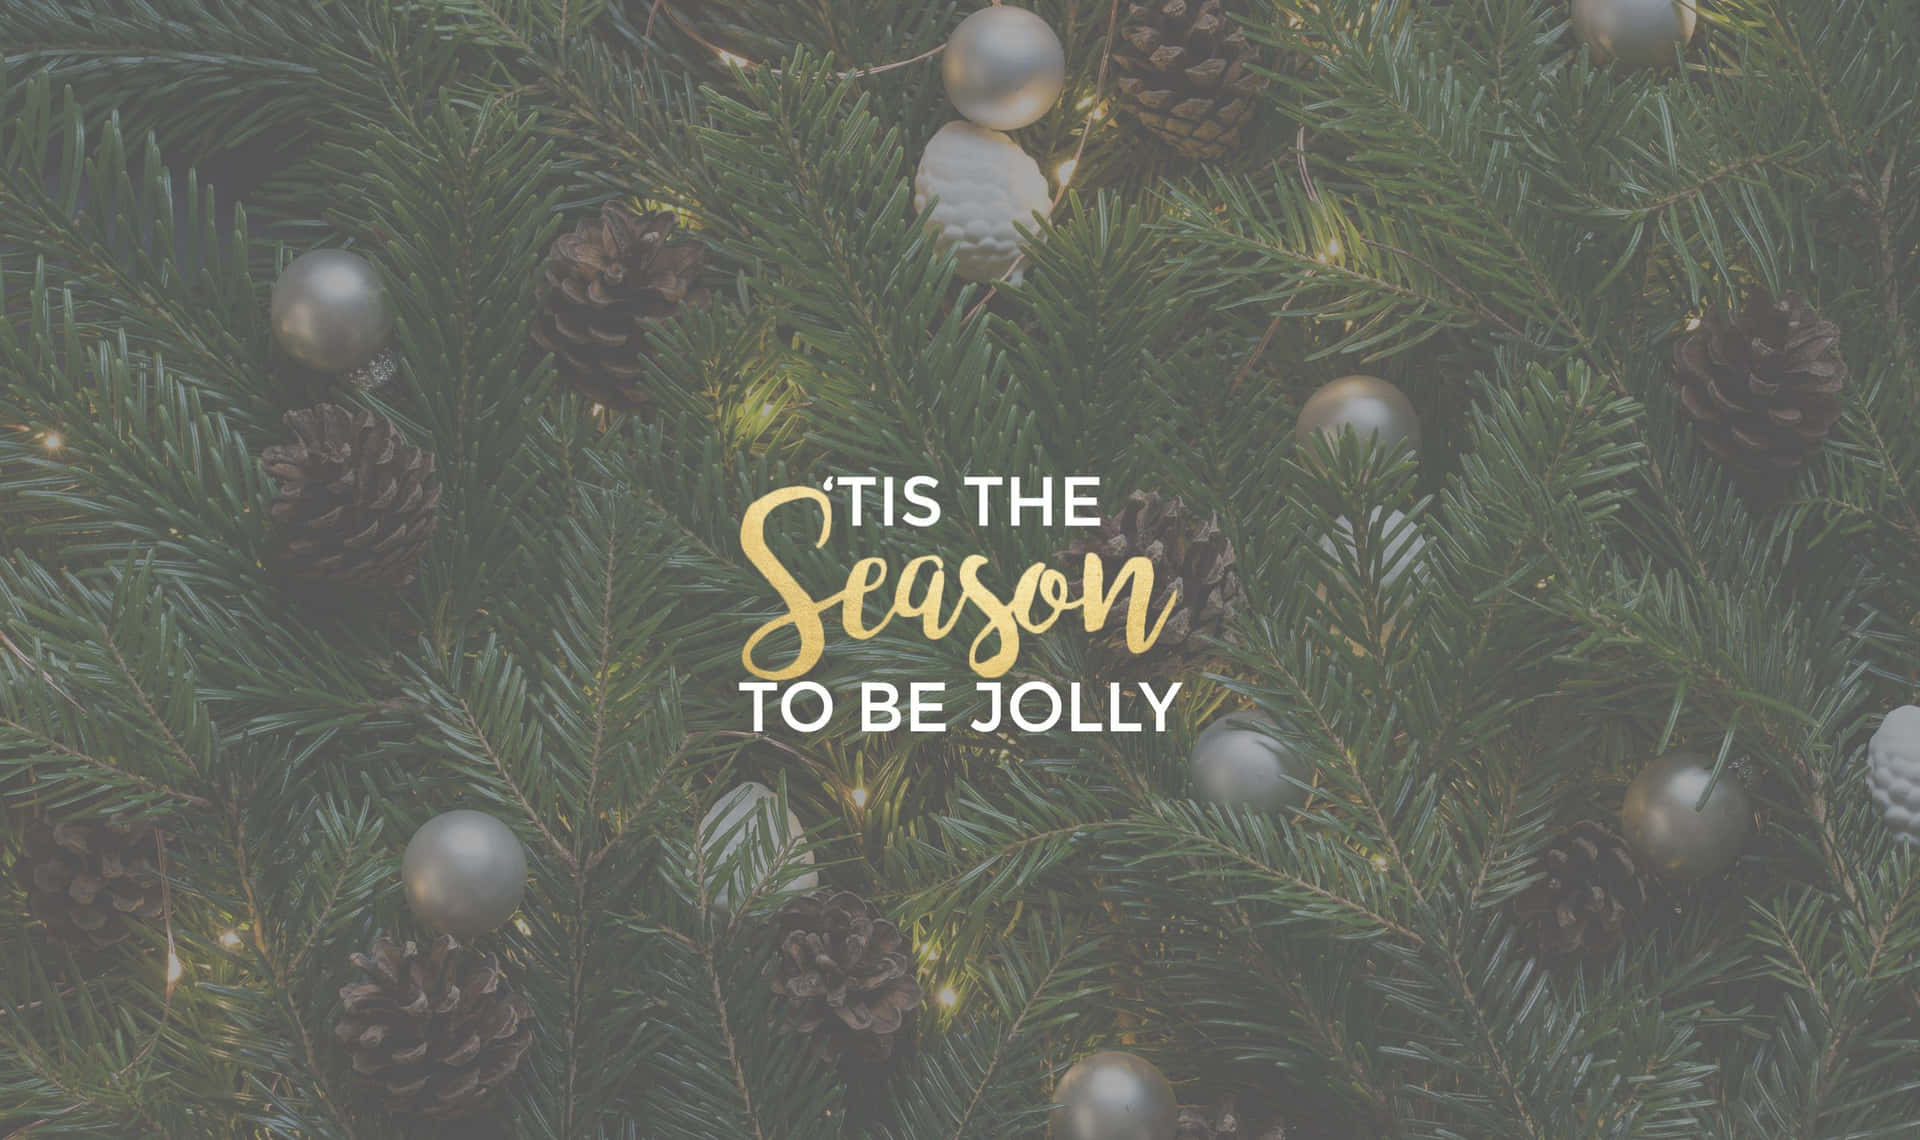 Feiernsie Die Feiertage Mit Einem Zauberhaften Weihnachtsthema Auf Tumblr. Wallpaper